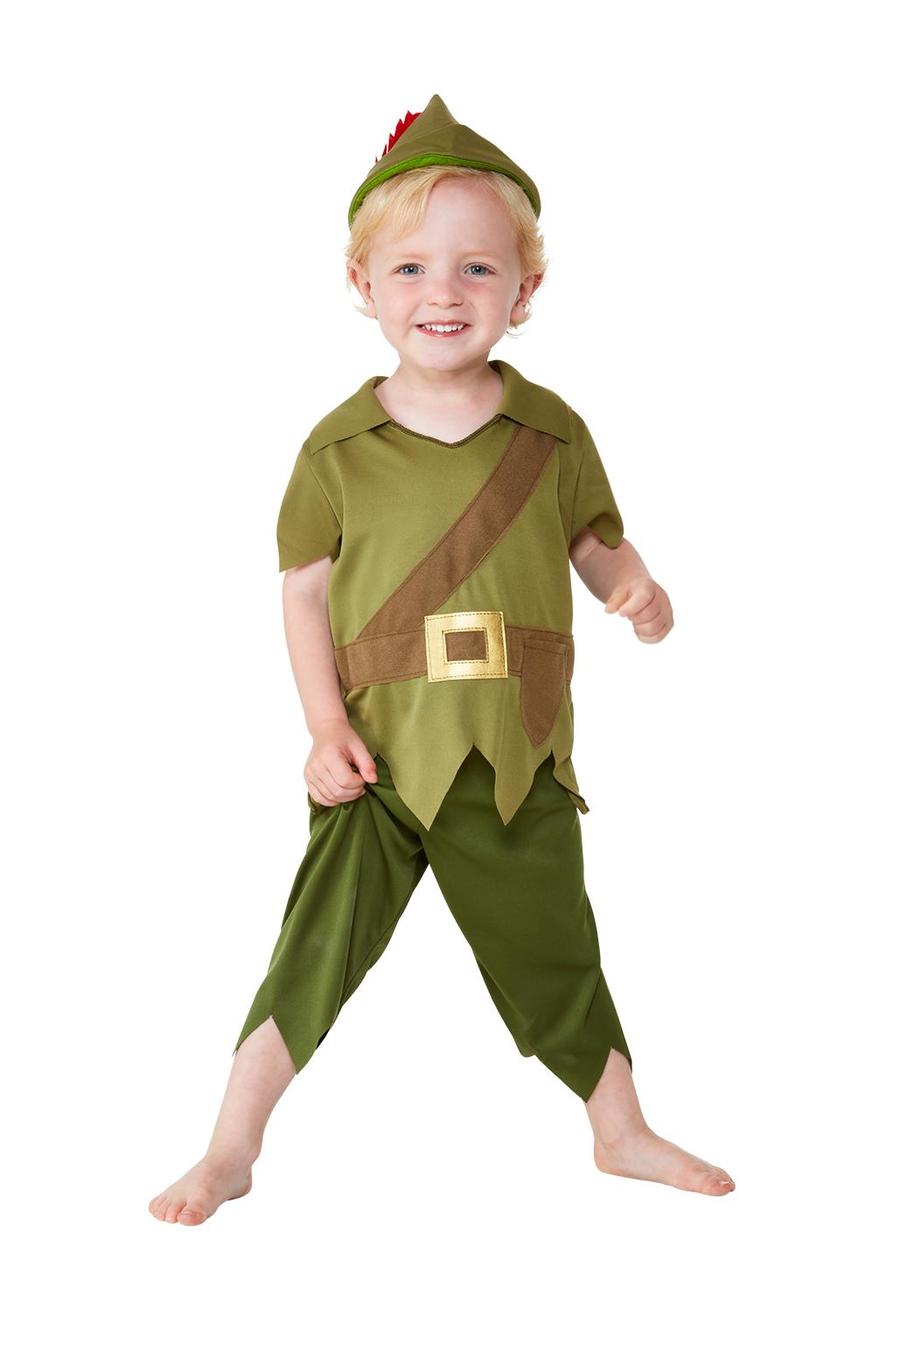 Toddler_Robin_Hood_Costume